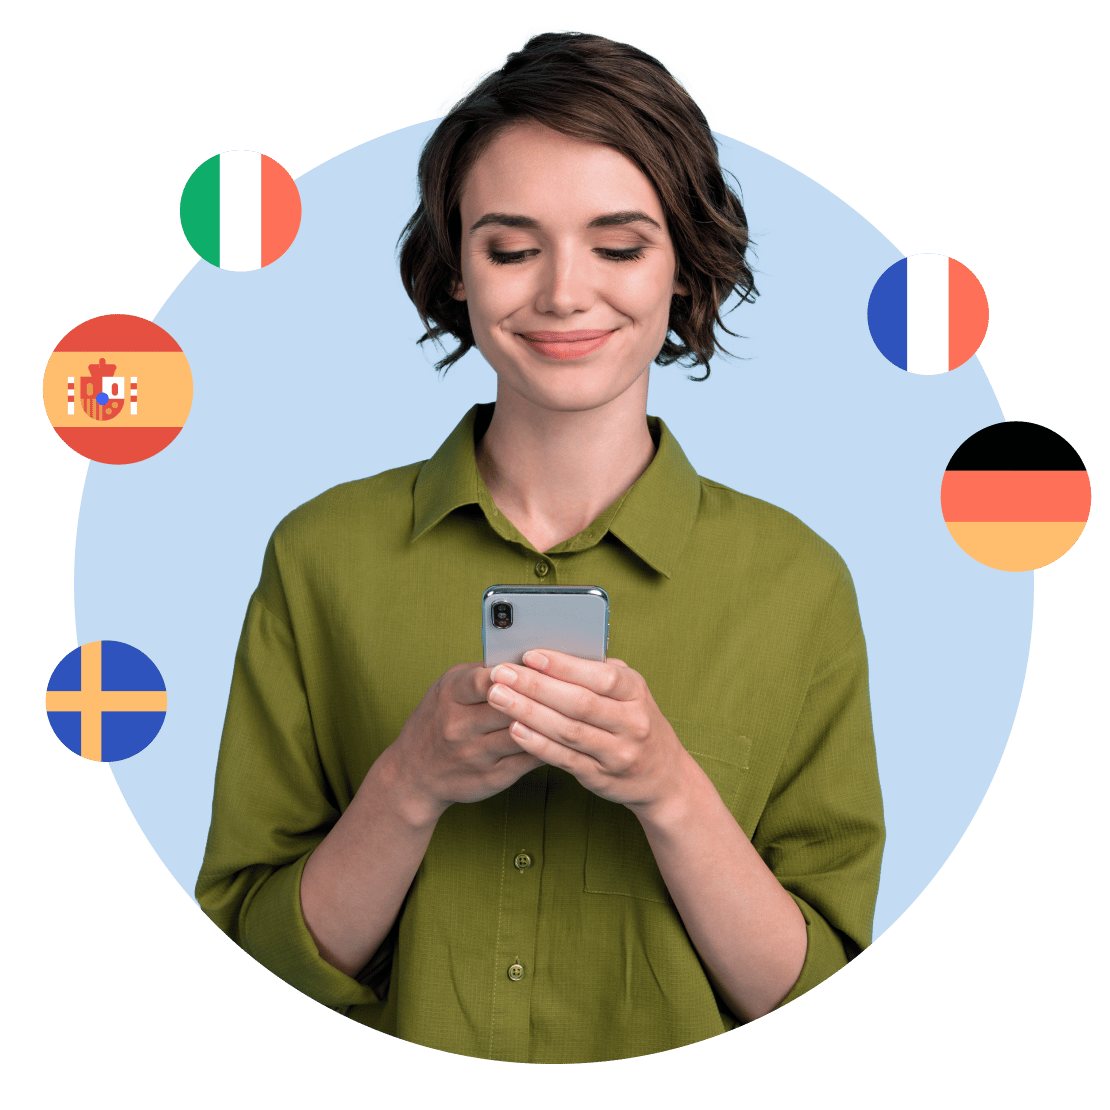 NordVPNのおかげでプライバシーが向上し、Duolingoで複数の言語を楽しく学ぶ女性。